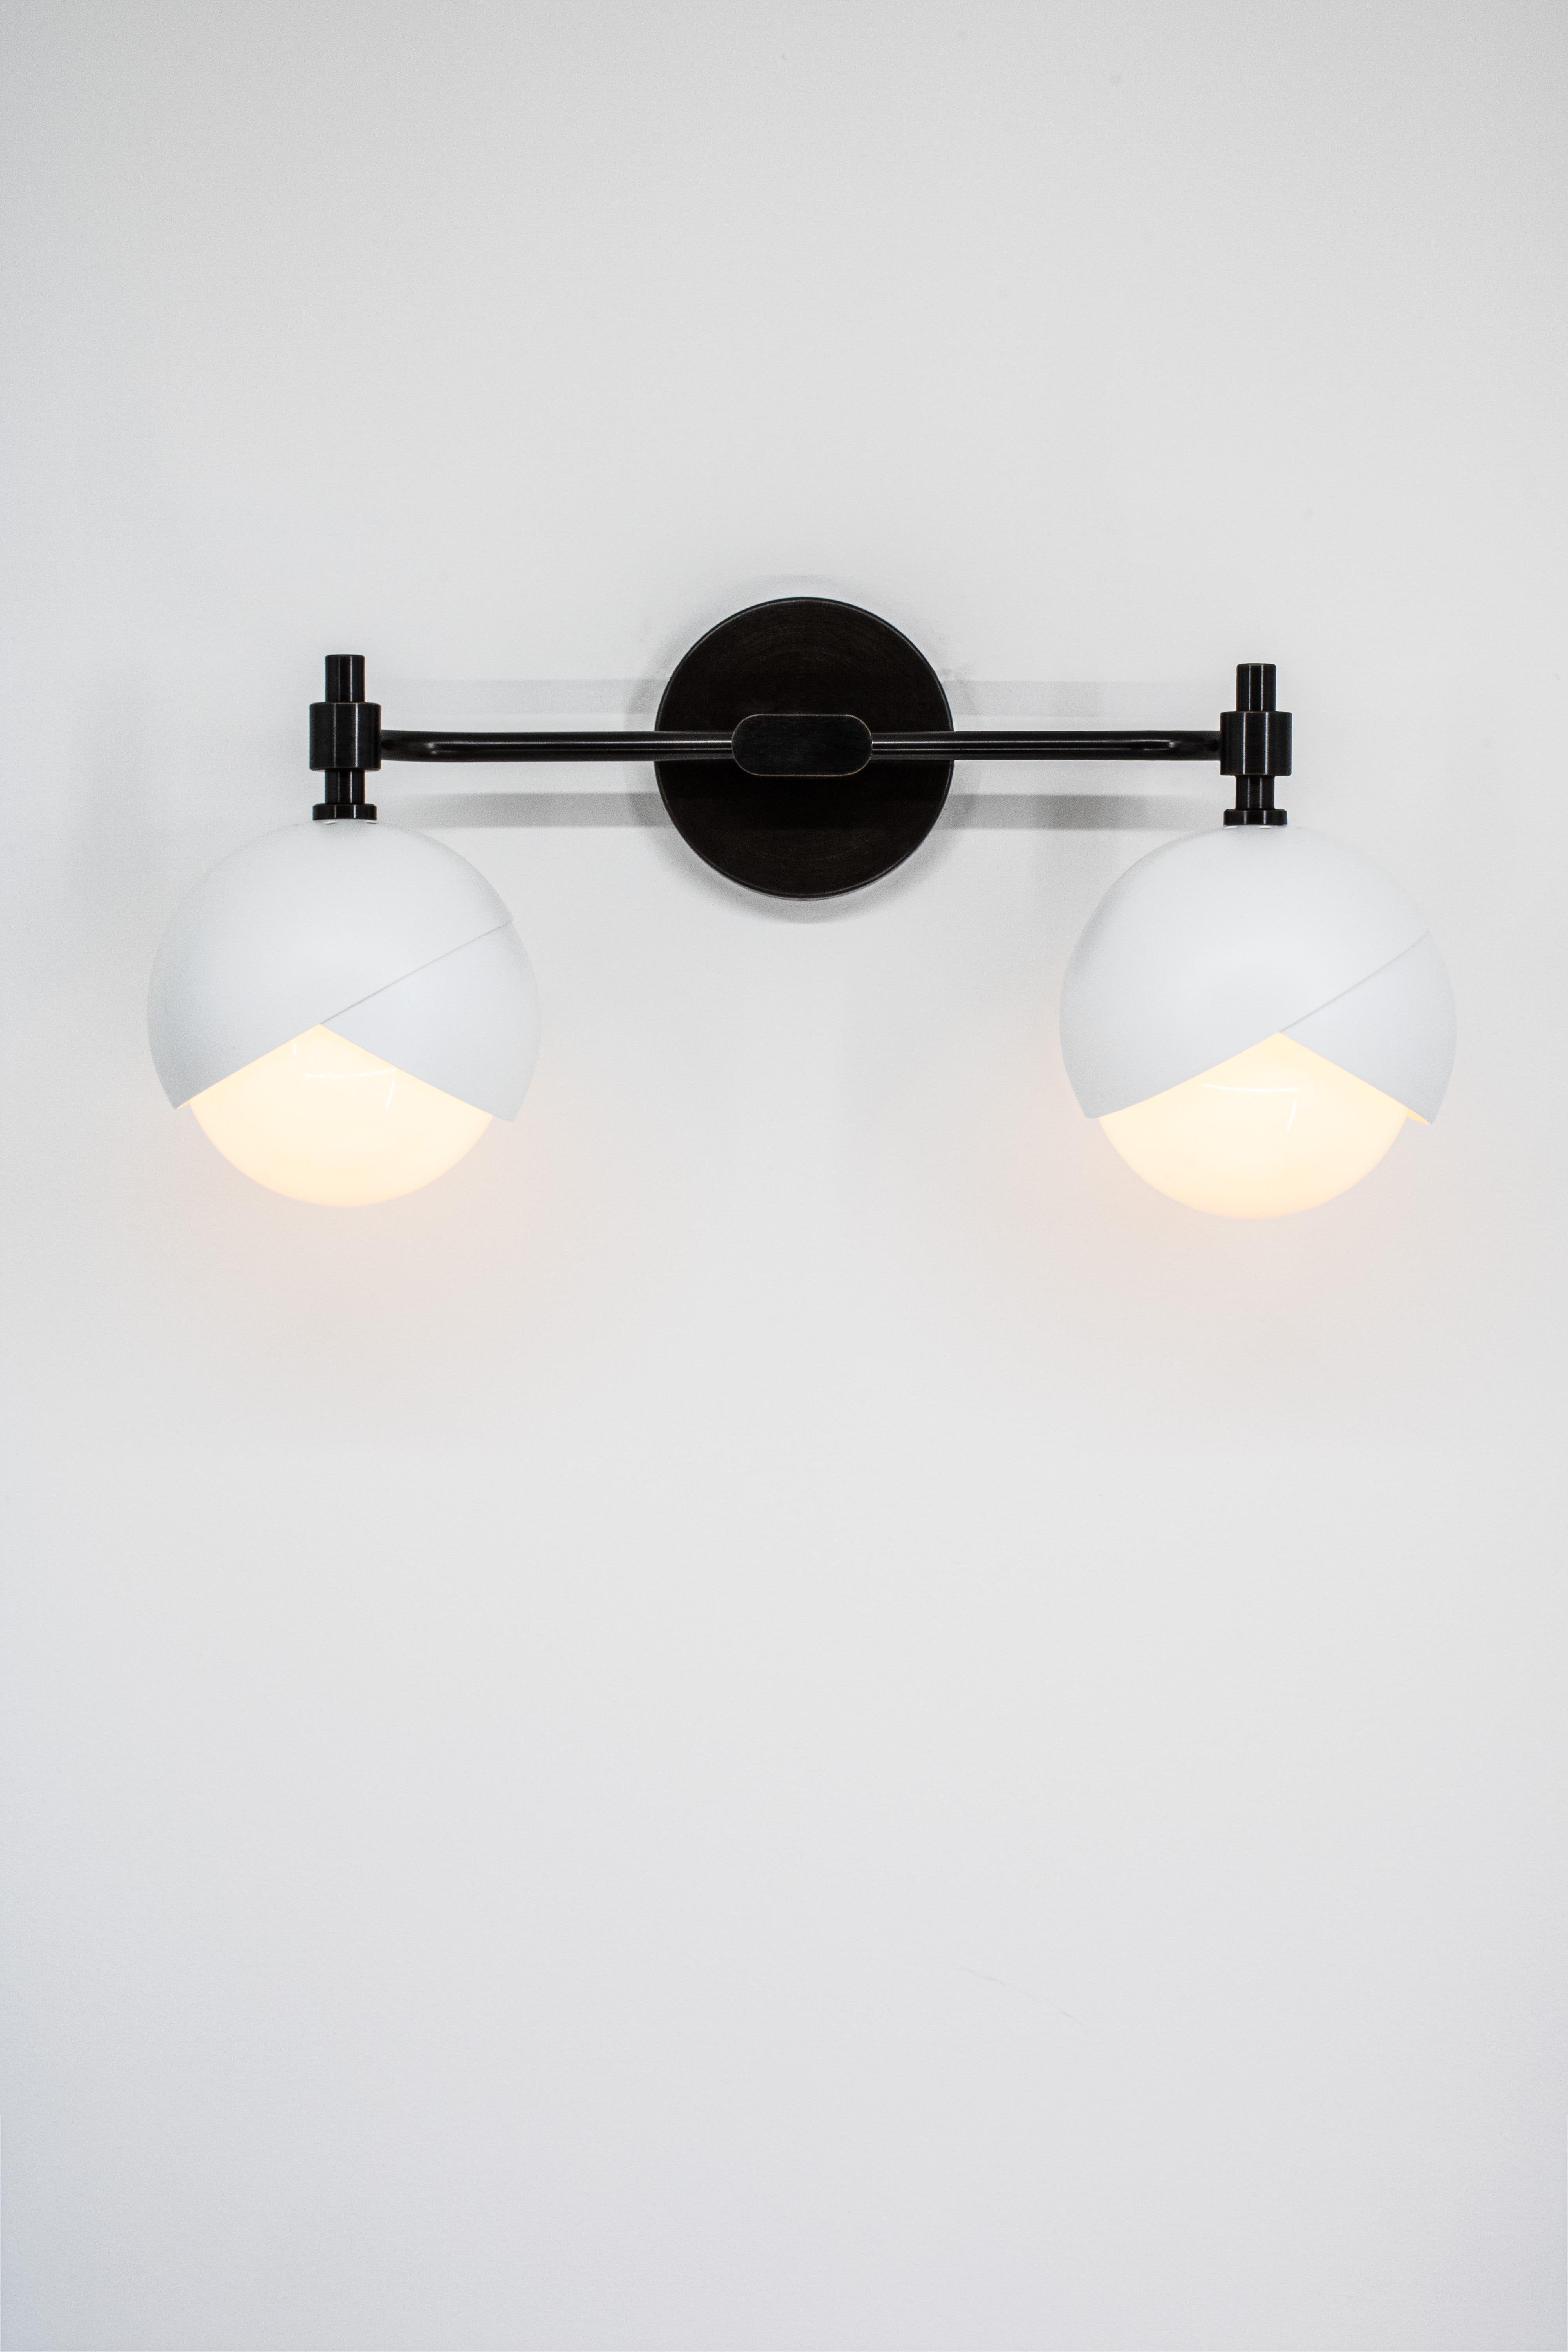 L'applique pour meuble-lavabo Benedict™ suspend deux ensembles de lumières Benedict™ à une armature horizontale en laiton. Cette applique murale est conçue pour être utilisée au-dessus d'un miroir, pour éclairer une œuvre d'art ou comme un détail